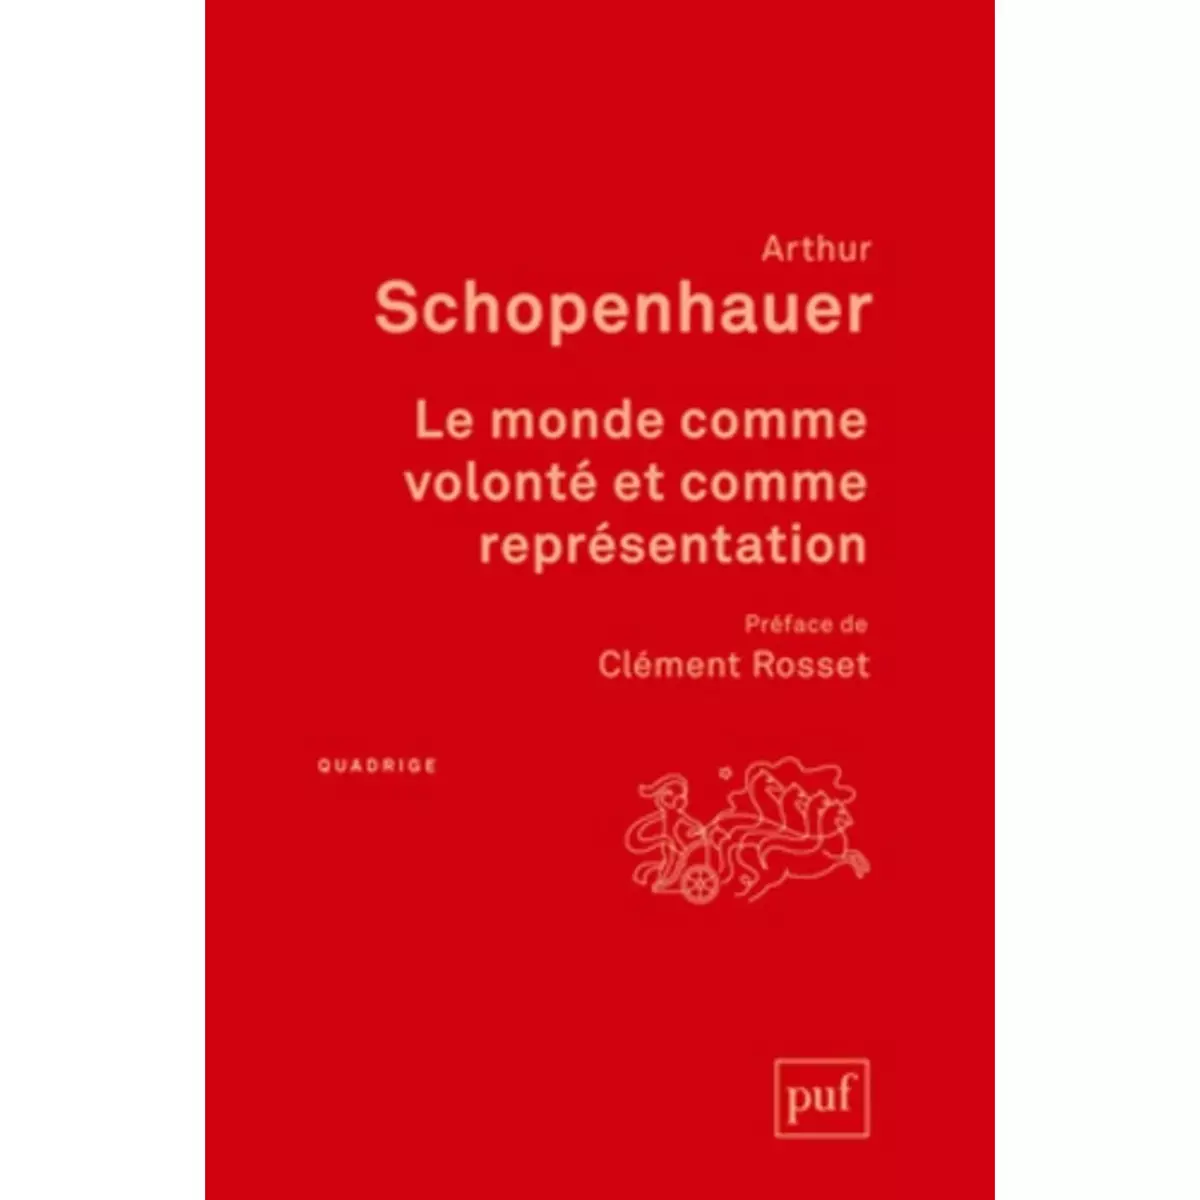  LE MONDE COMME VOLONTE ET COMME REPRESENTATION. 3E EDITION, Schopenhauer Arthur